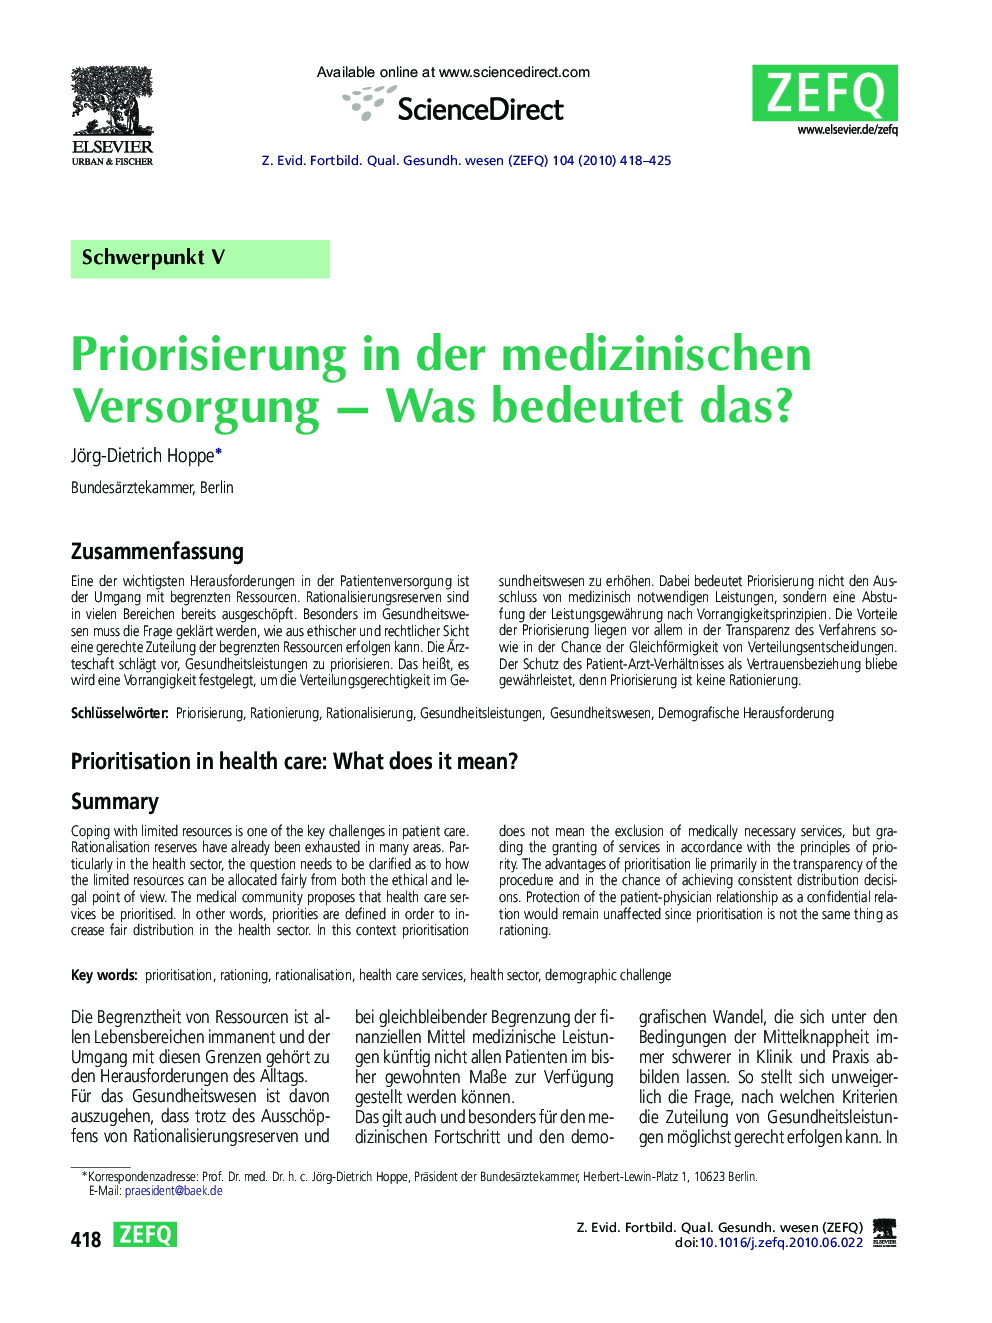 Priorisierung in der medizinischen Versorgung – Was bedeutet das?